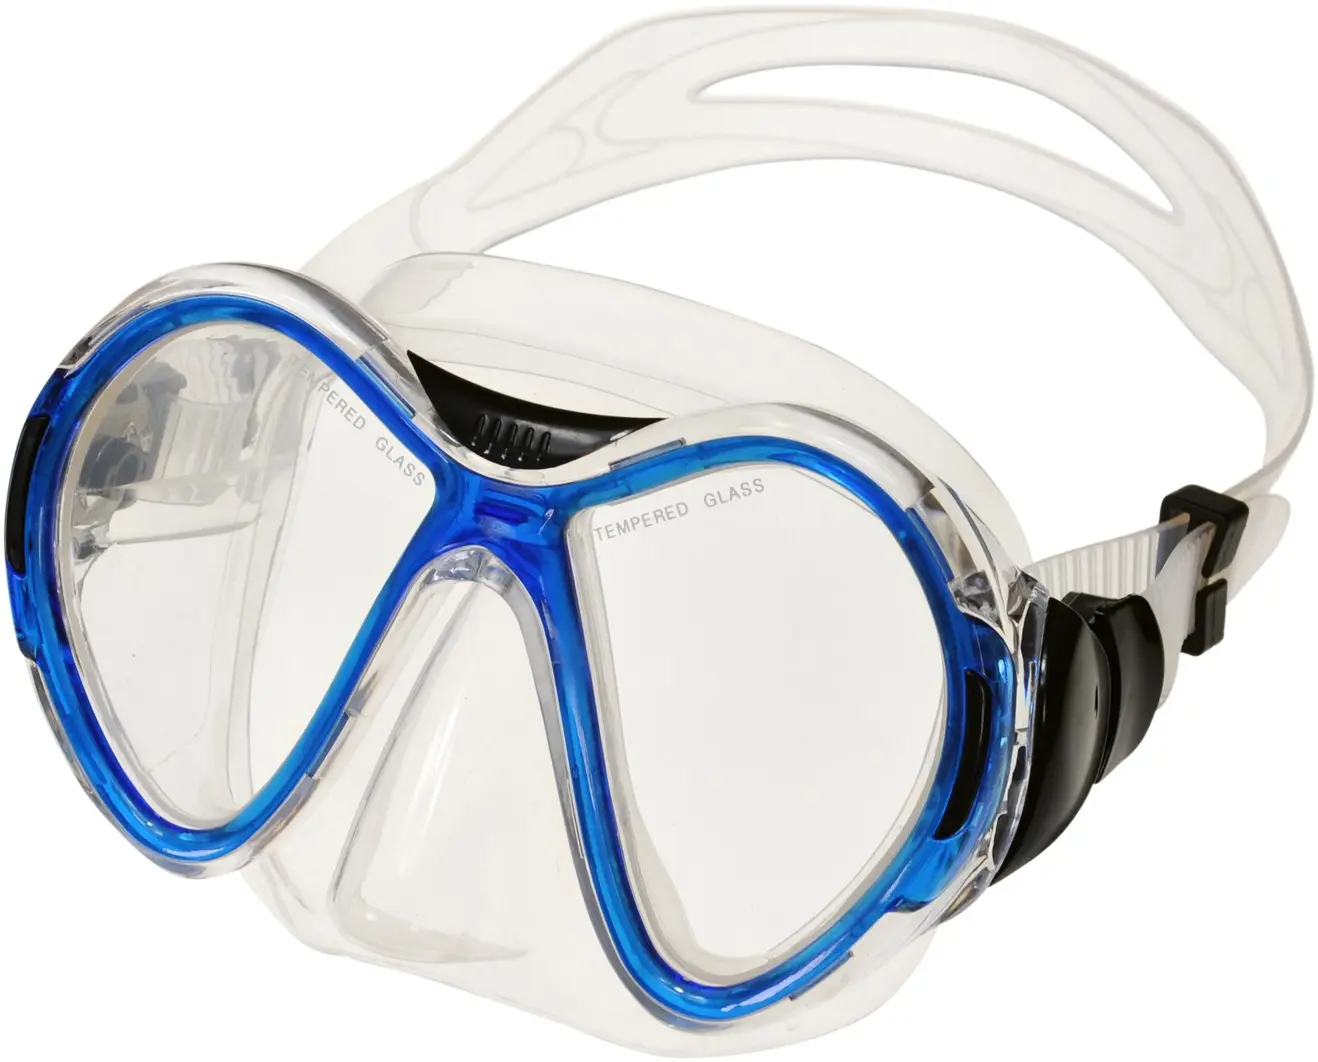 Masque de plongée en PVC pour adulte, prix d'usine bon marché, masque de plongée sous-marine en verre trempé